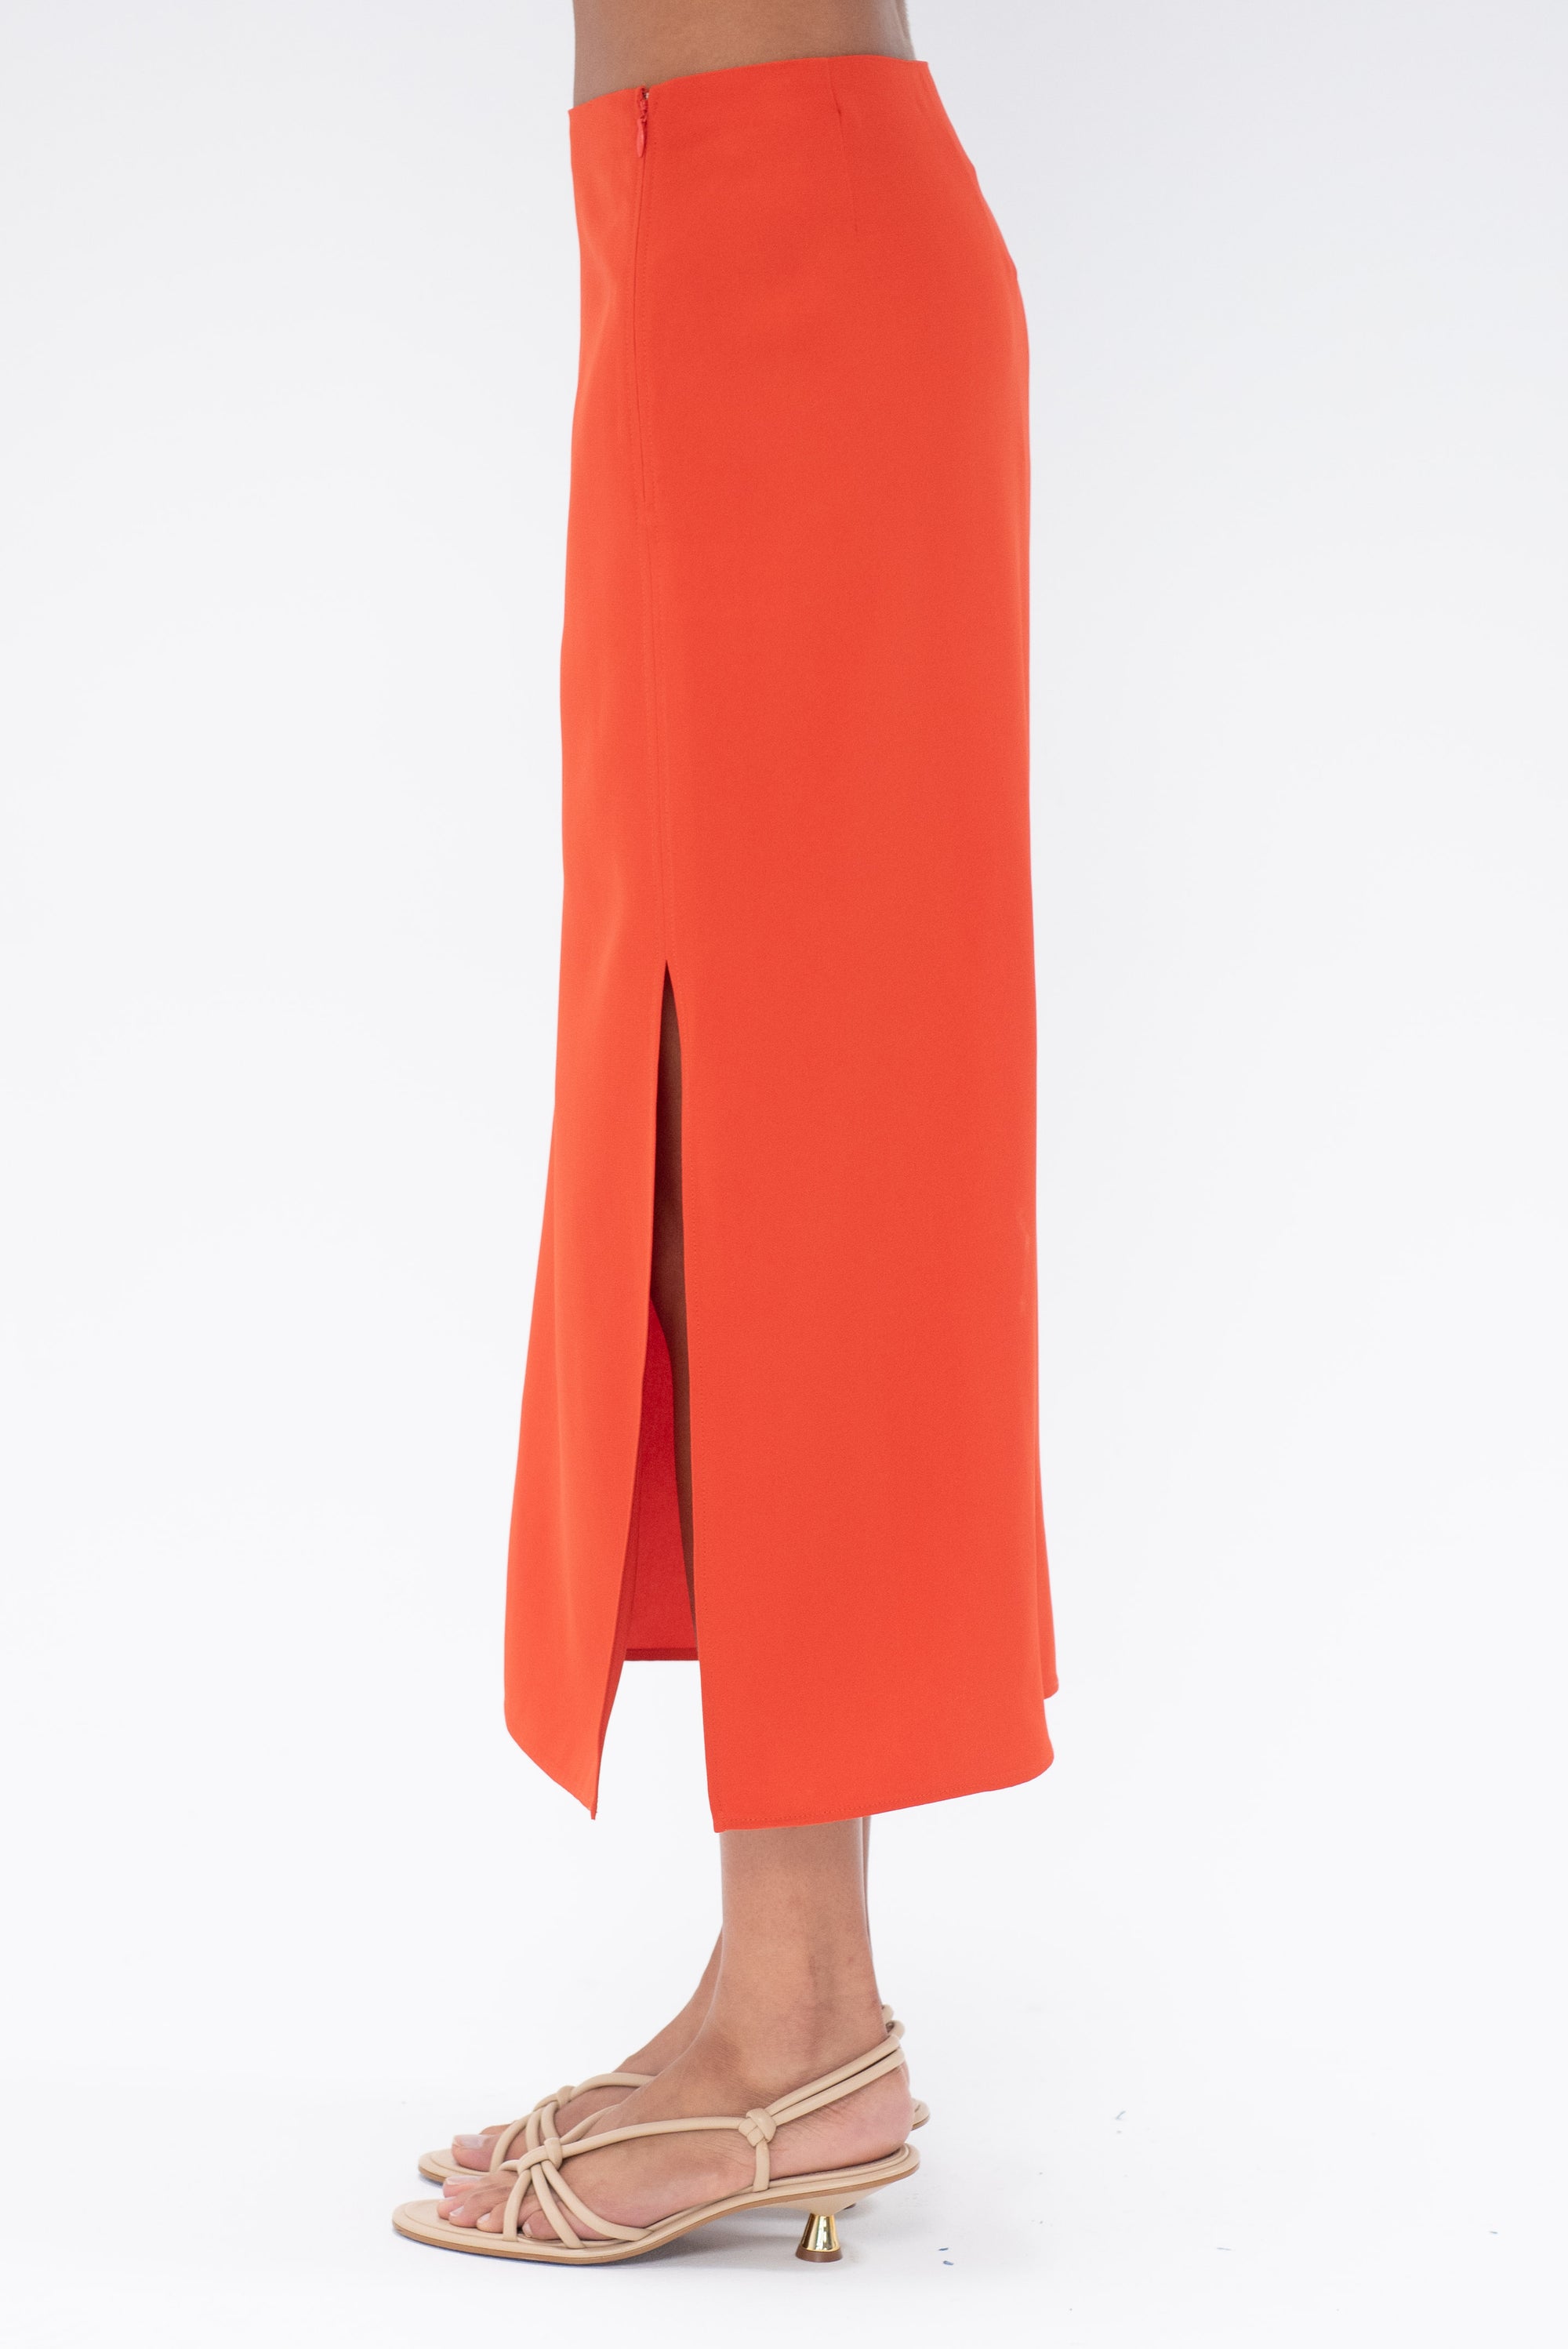 GAUCHERE - Skirt, Sunset Orange